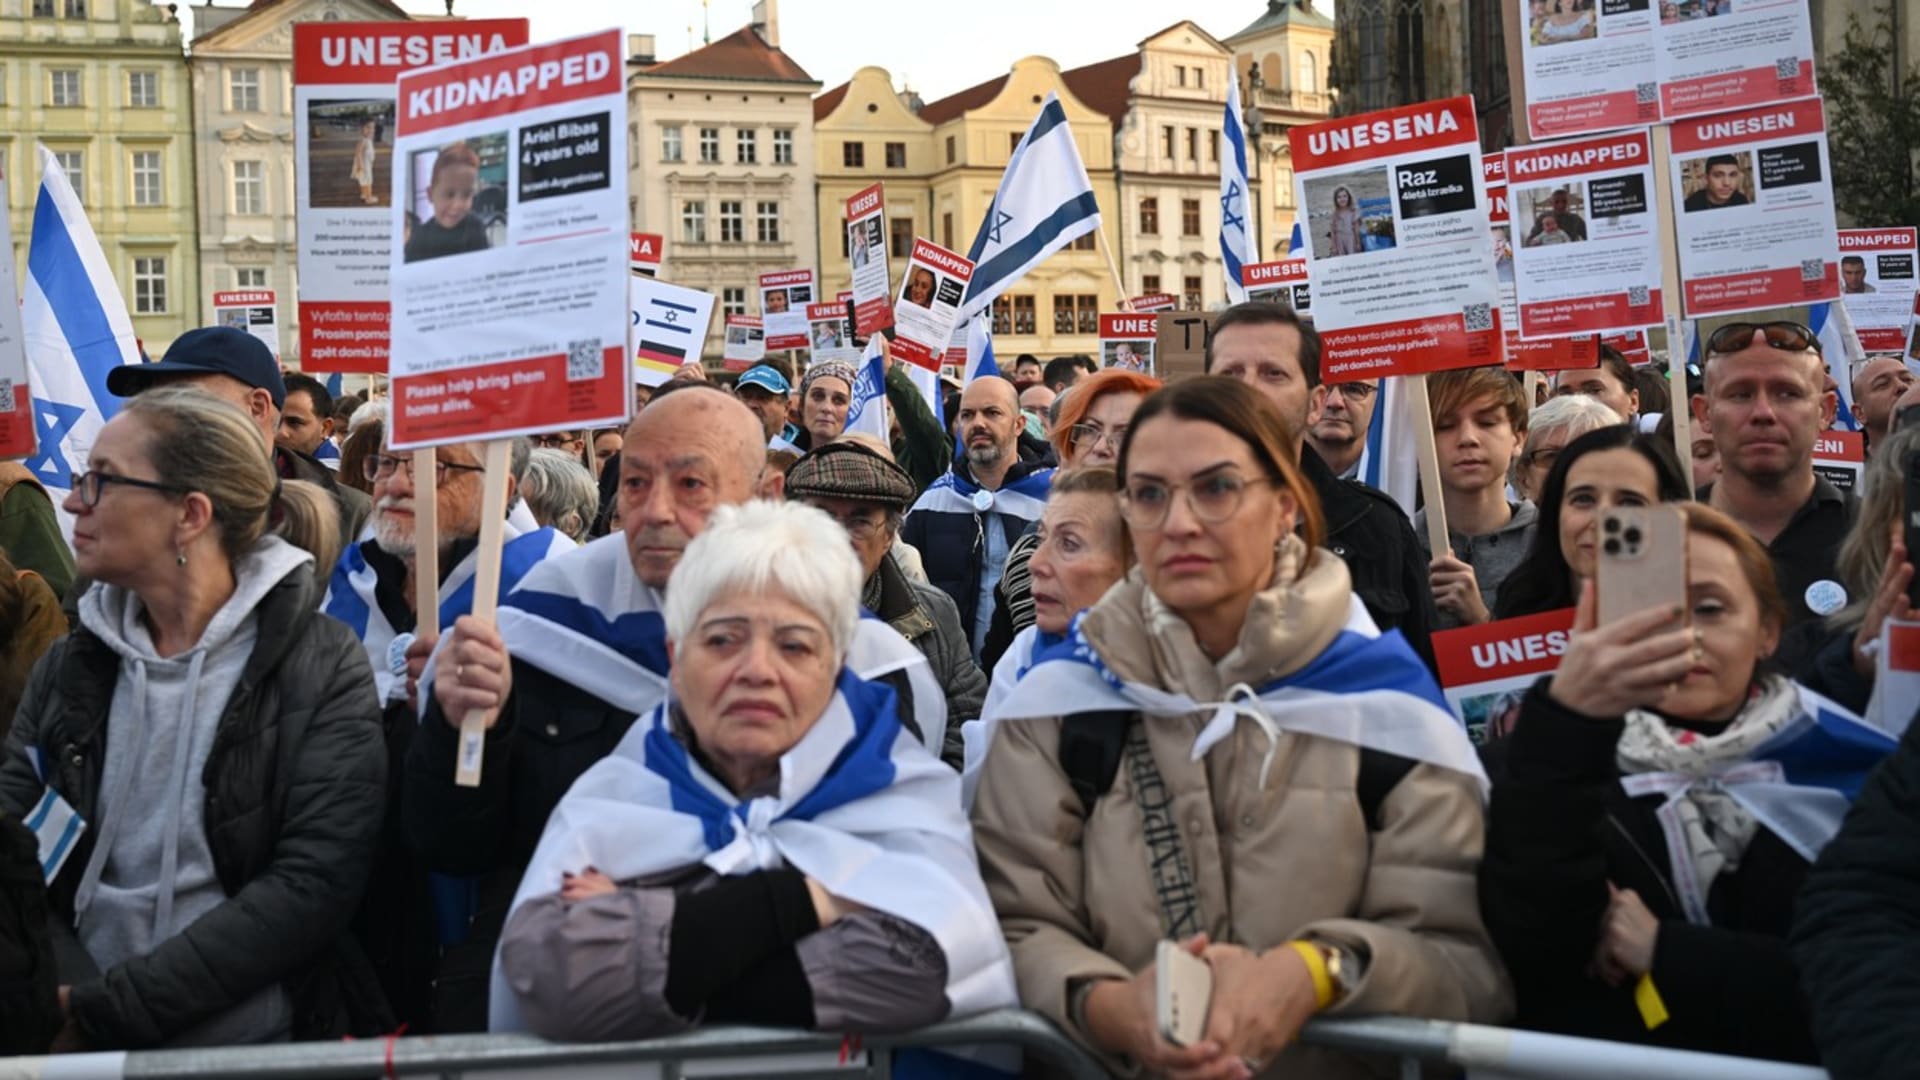 Postoj Česka k současné situace se od zbytku Západu dost liší. I podpora Izraele je zde výrazná.